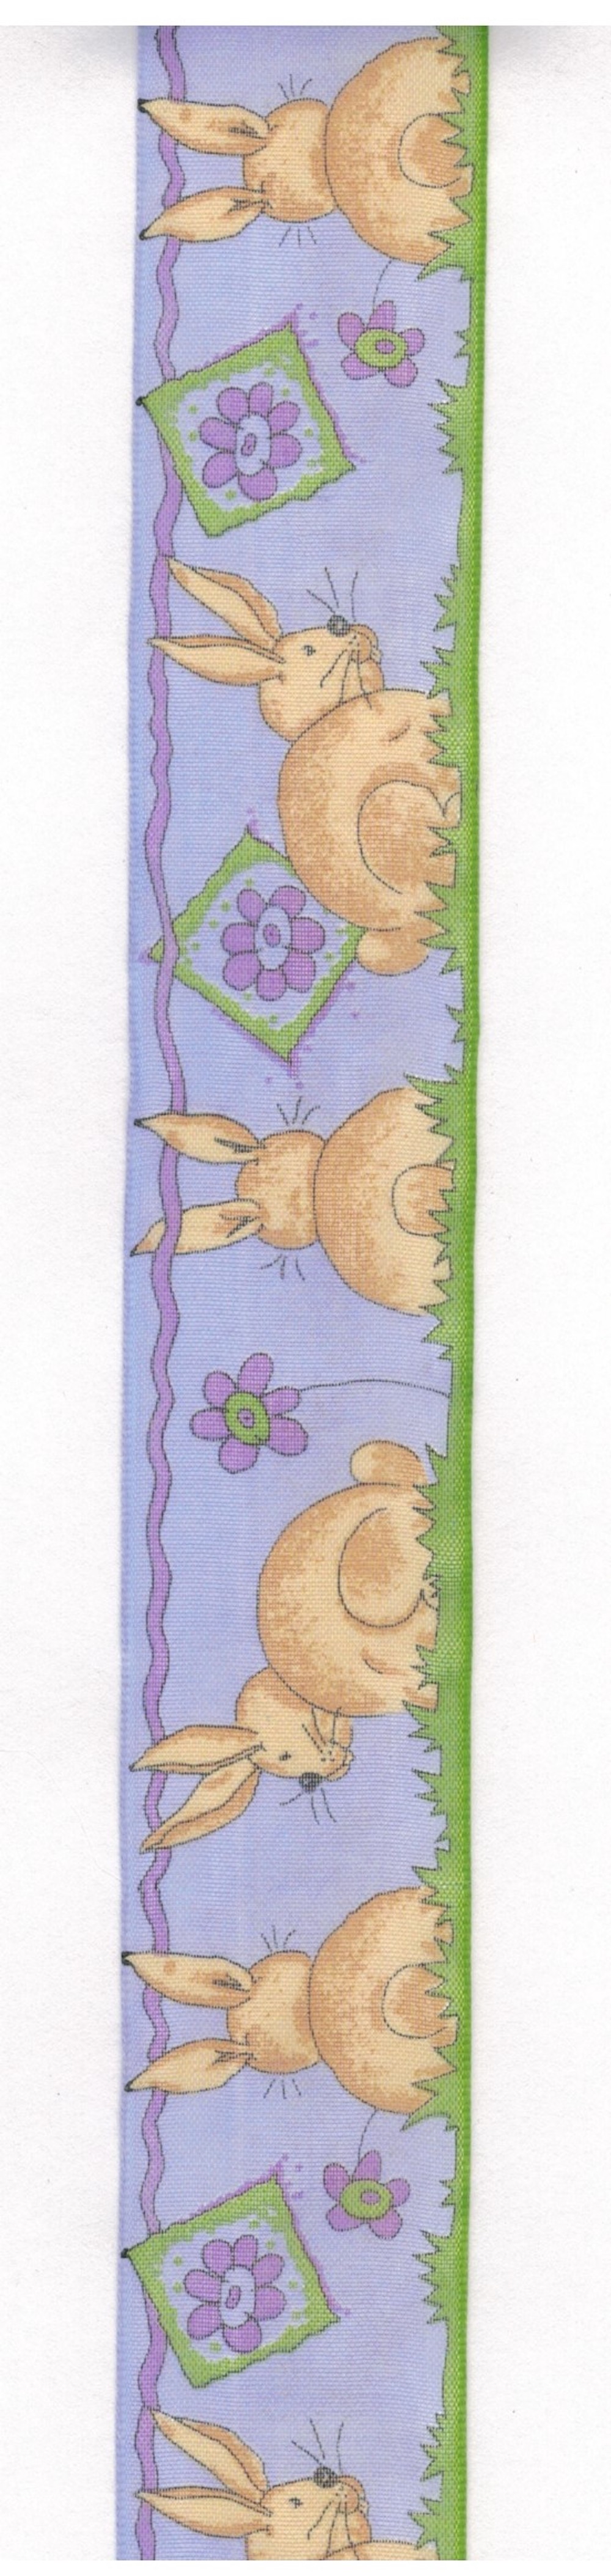 Geschenkband mit Drahtkante, 4 cm breit, braune Hasen auf lila Grund